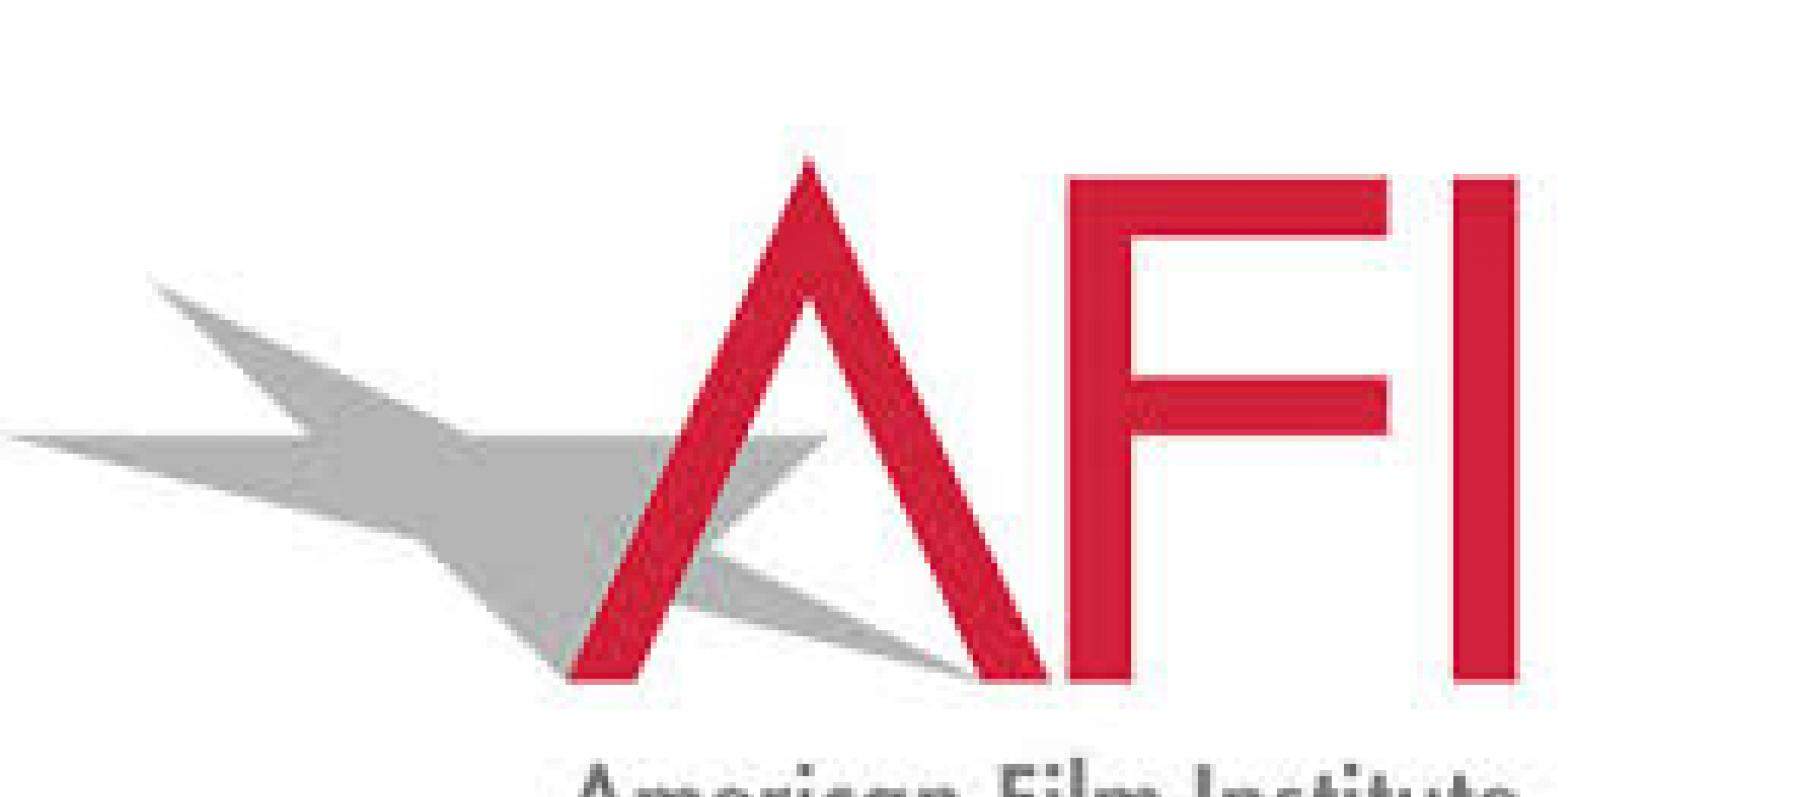 American Film Institute تكرّم عمالقة السينما